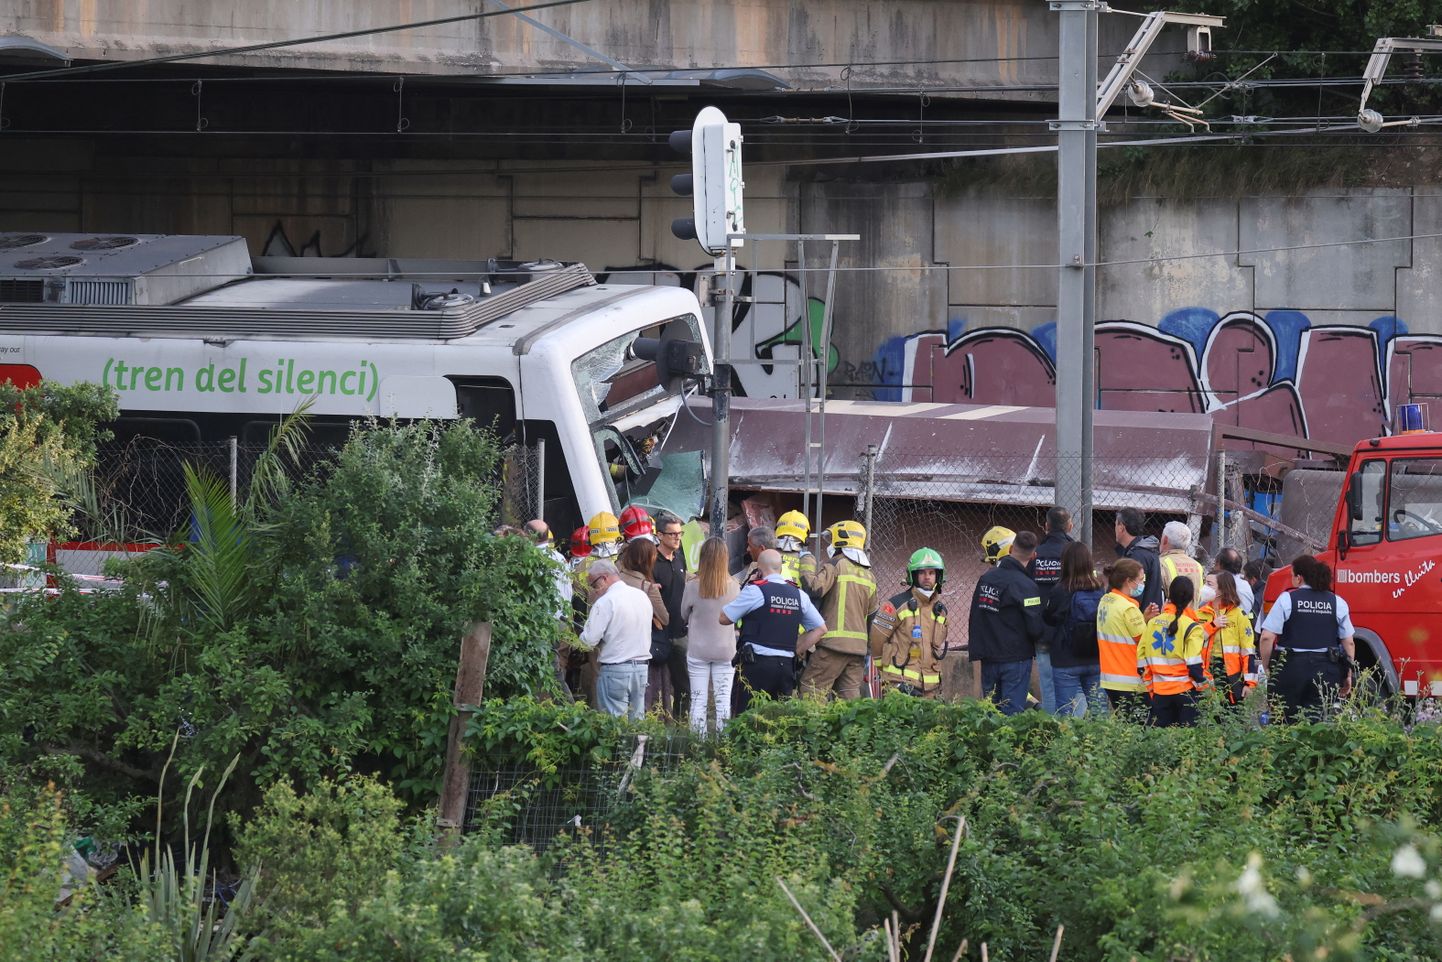 Divu vilcienu sadursmē Spānijā ievainoti 85 cilvēki, viens bojāgājušais.